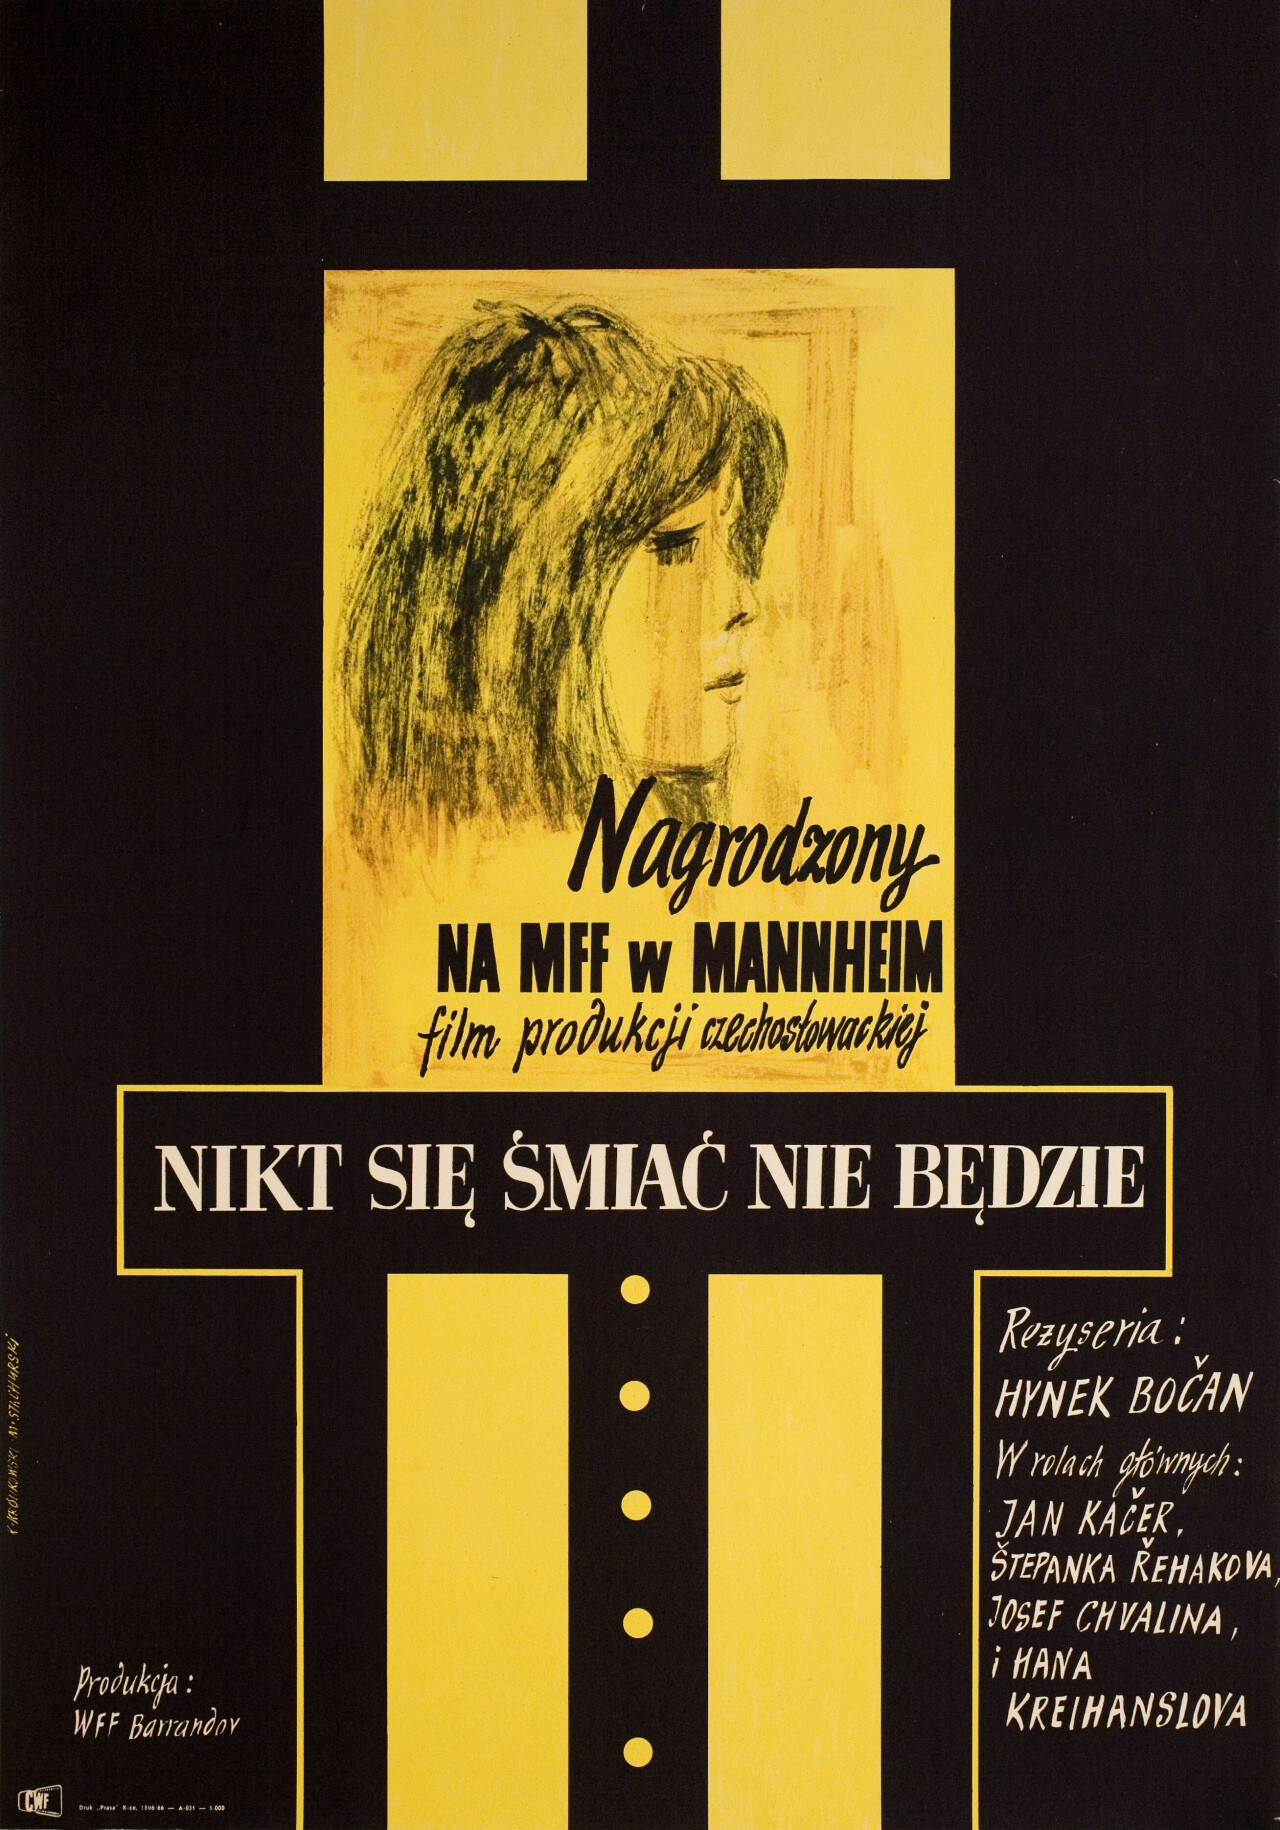 Никто не будет смеяться (Nobody Will Laugh, 1965), режиссёр Хинек Бокан, польский постер к фильму, автор Мариан Стачурски, КАЗИМИР КРОЛИКОВСКИЙ (графический дизайн, 1966 год)